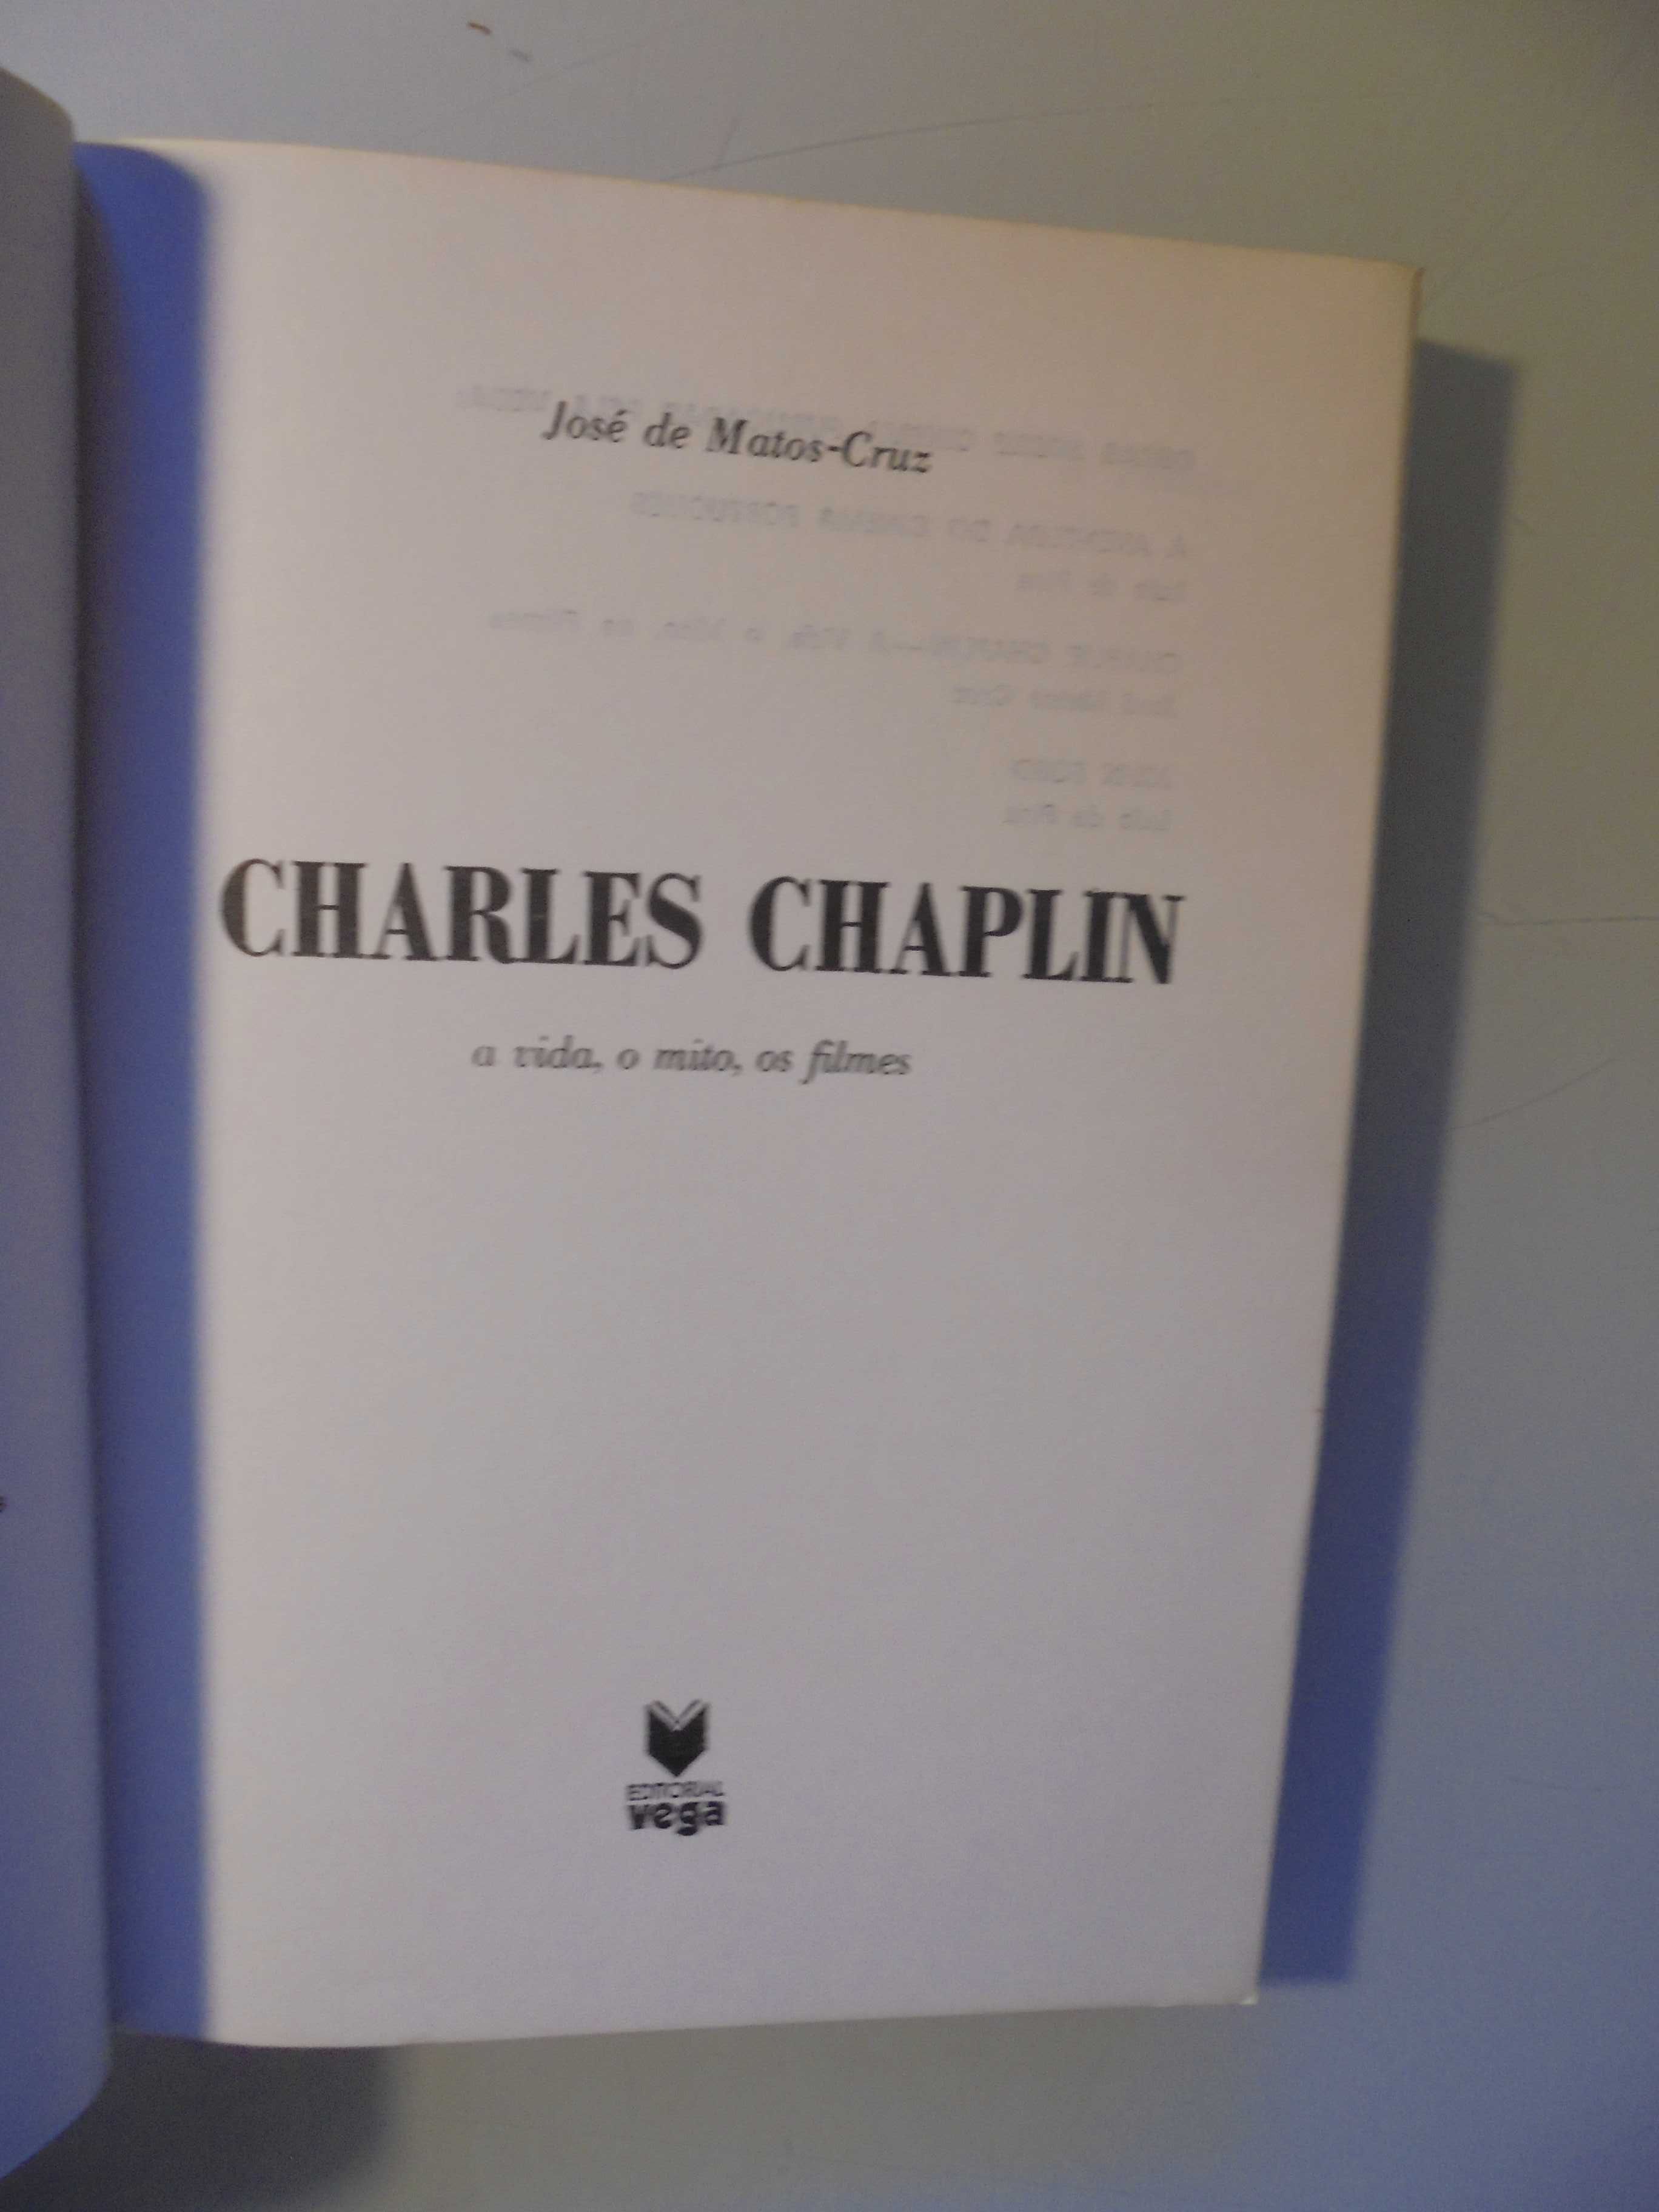 Cruz (José de Matos);Charles Chaplin-A vida,o Mito,Os Filmes